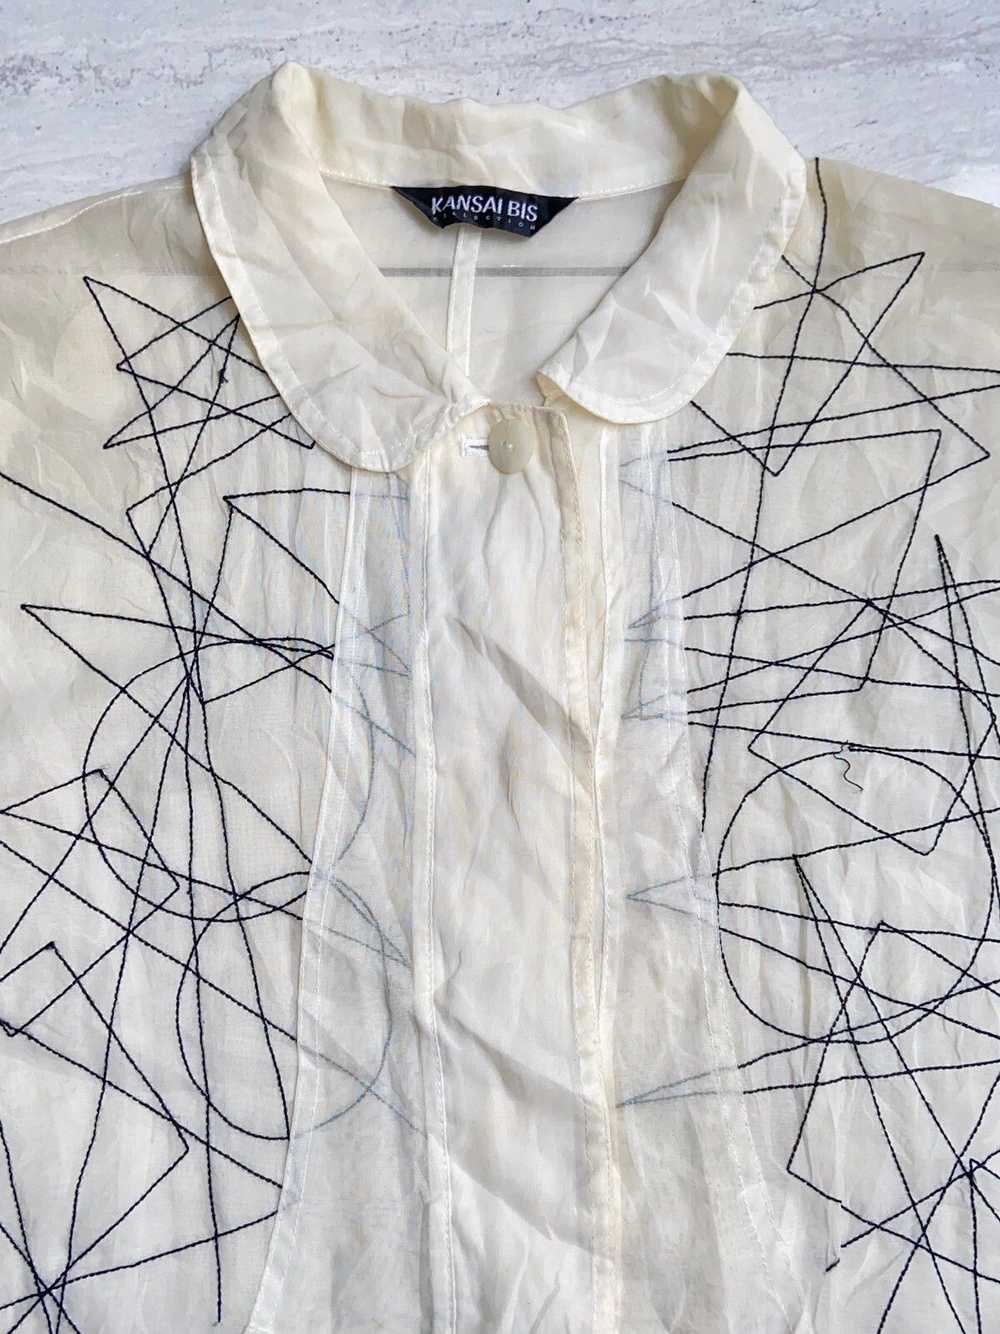 Kansai Yamamoto KANSAI BIS White Mesh Shirt - image 5